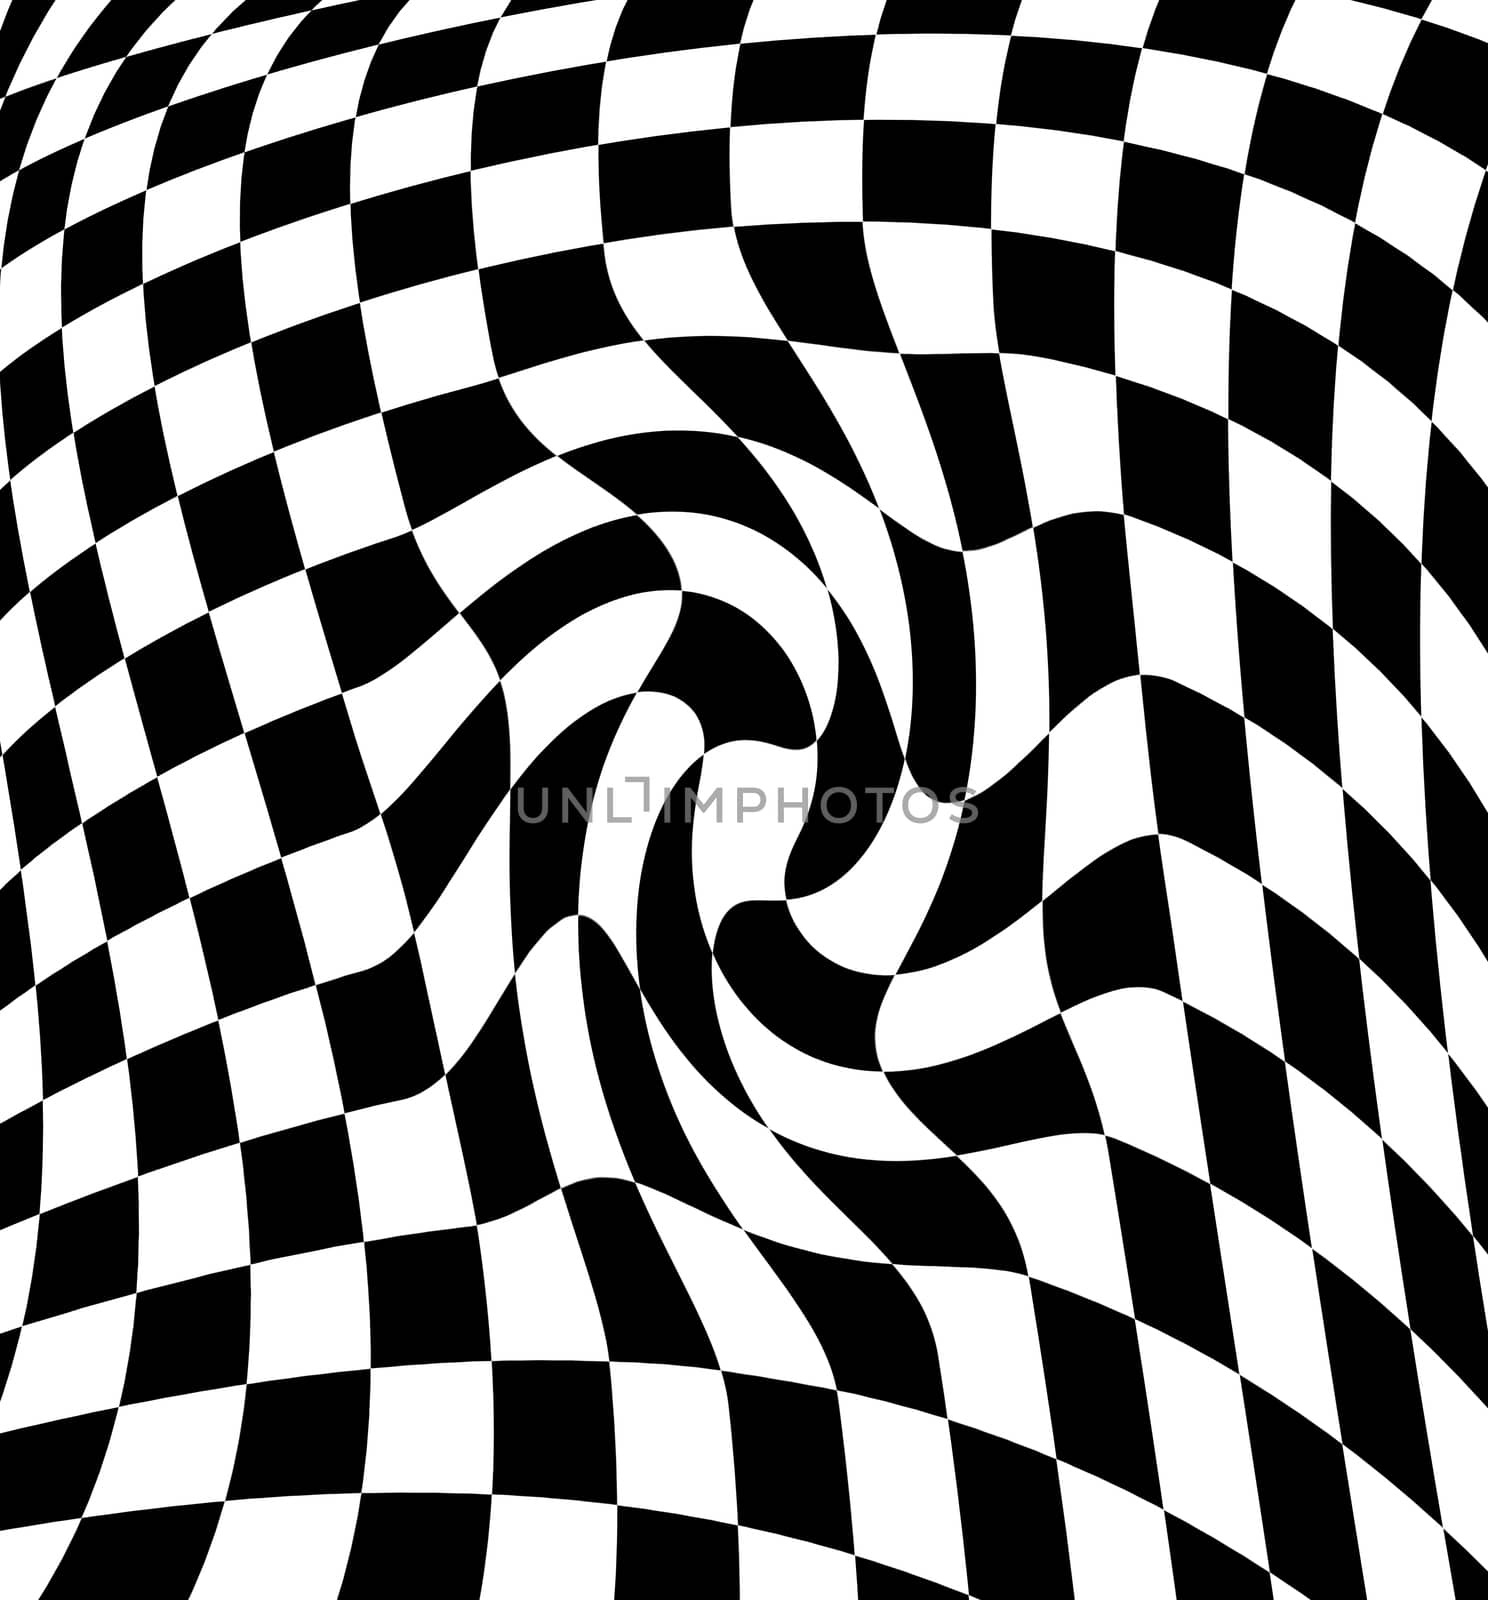 Black-white  checkered plane by vitanovski